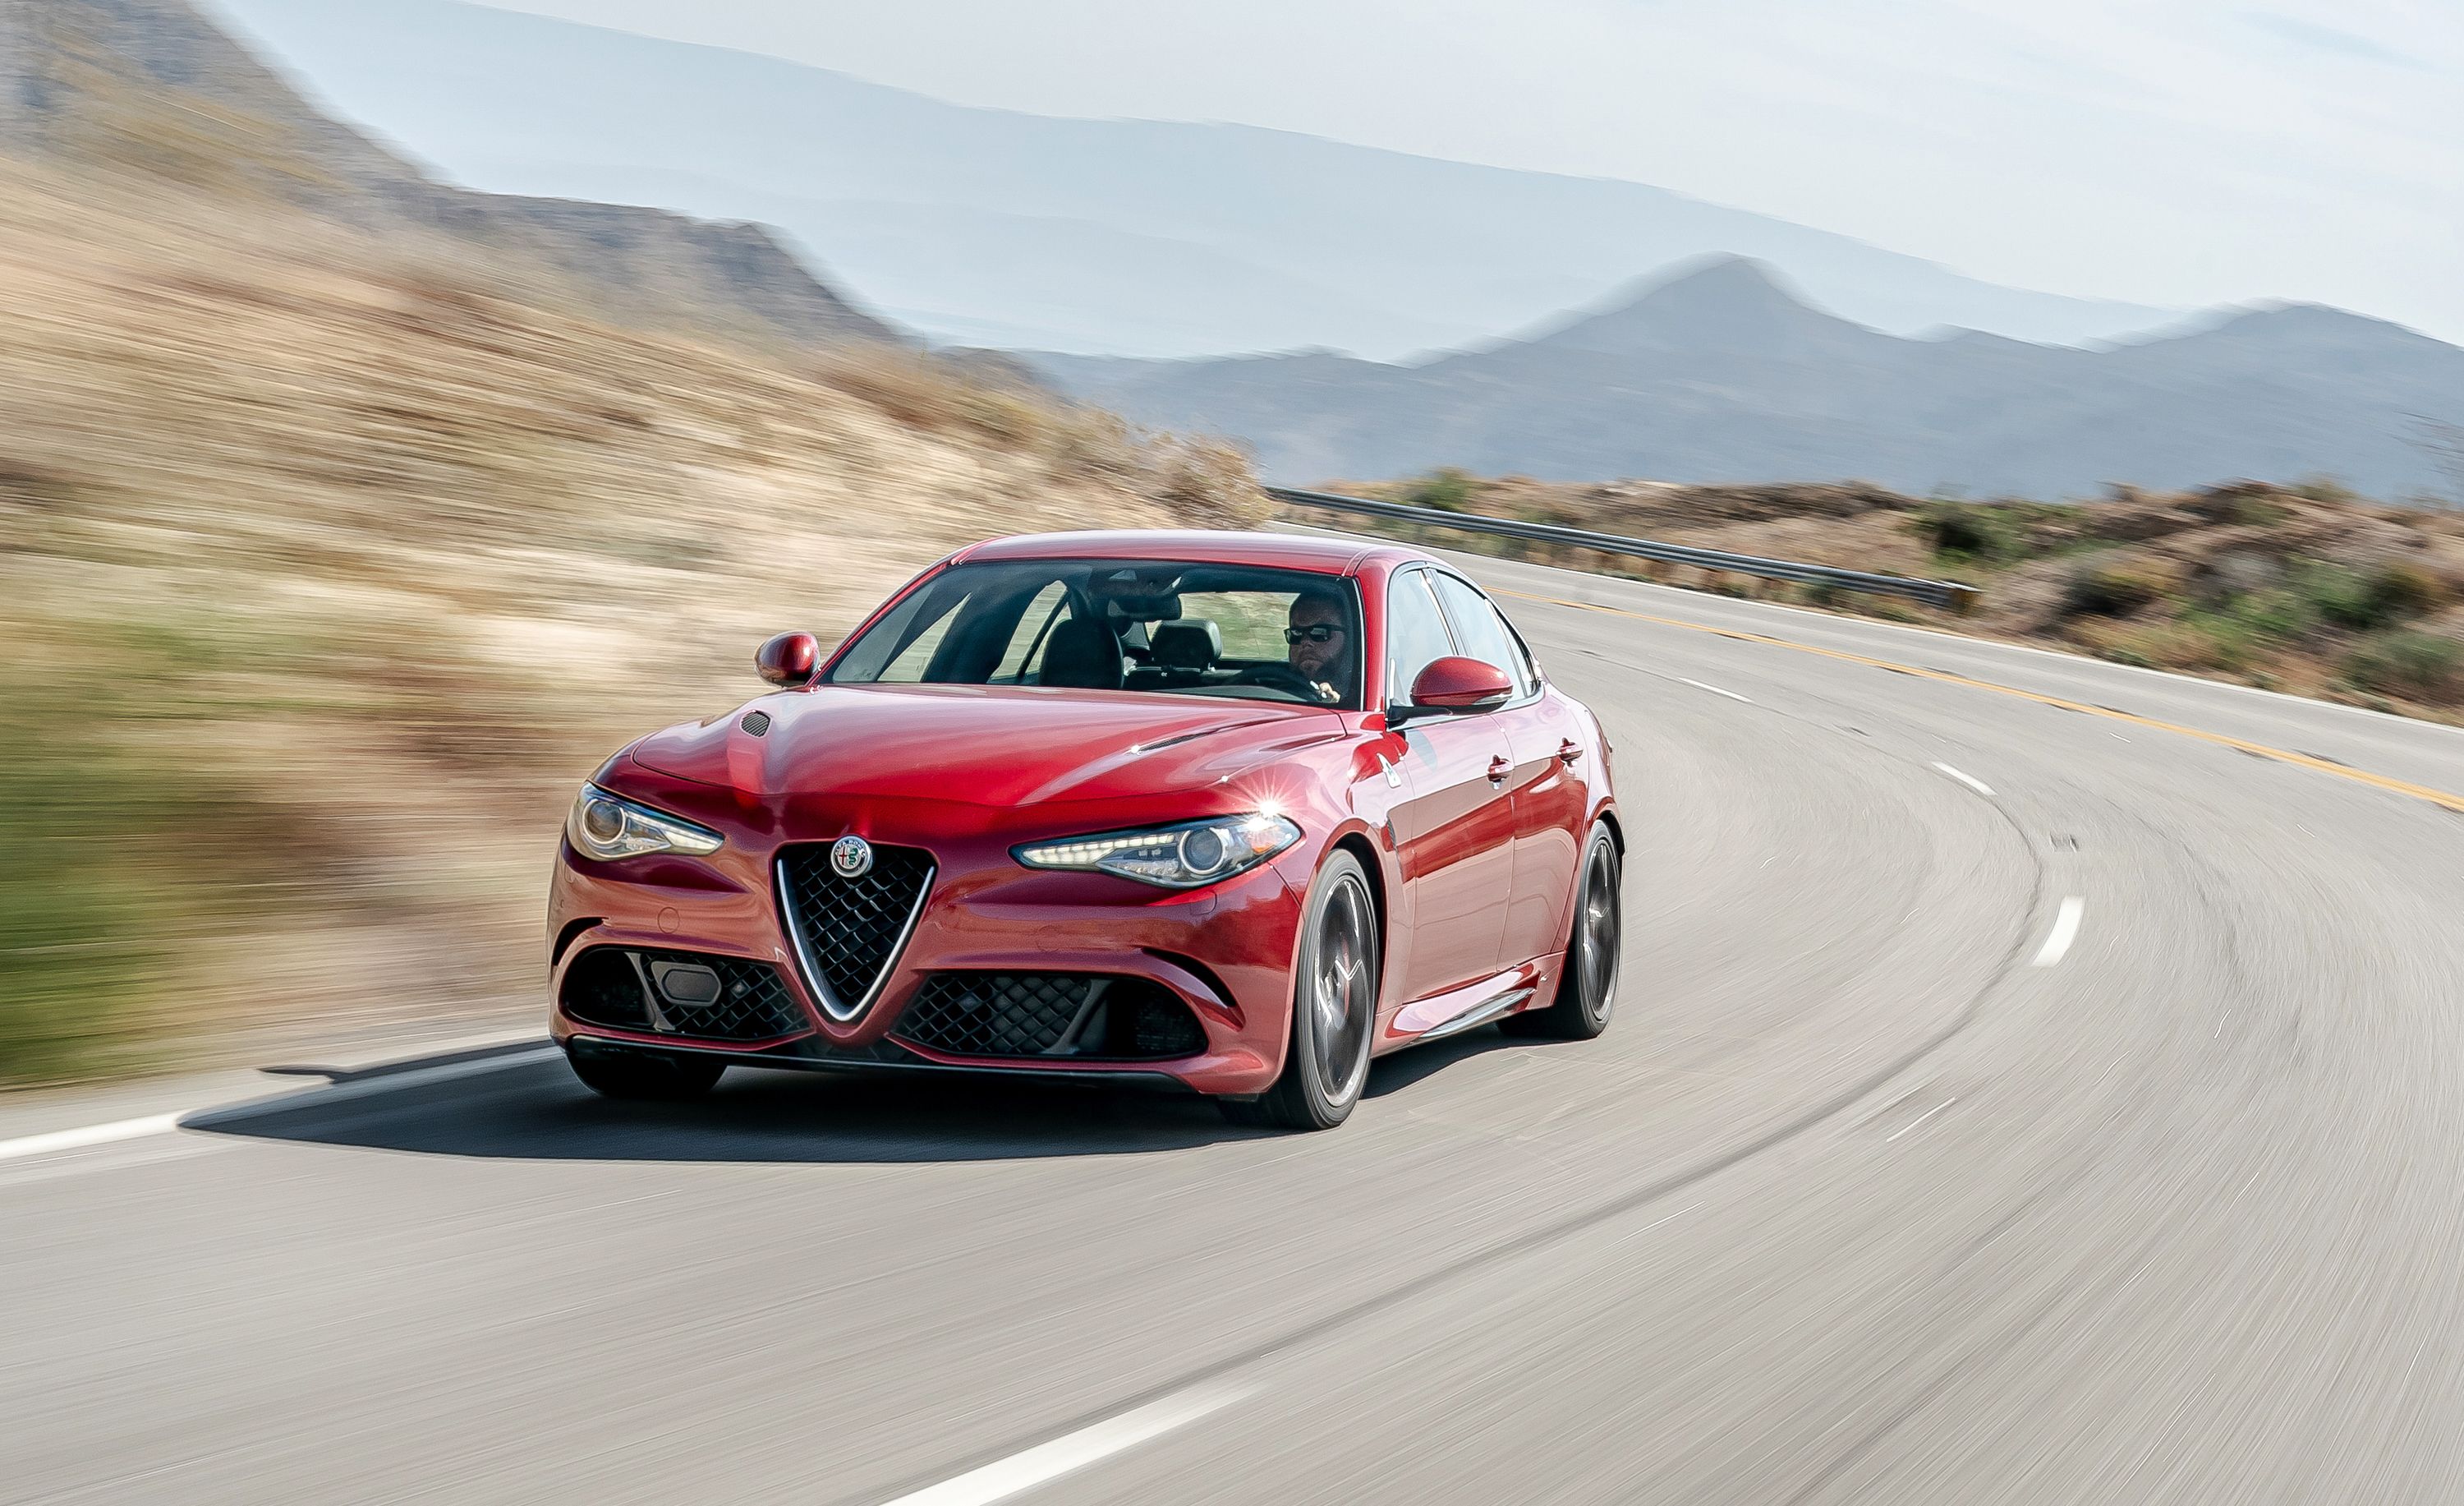 Are Alfa Romeo Good Cars?